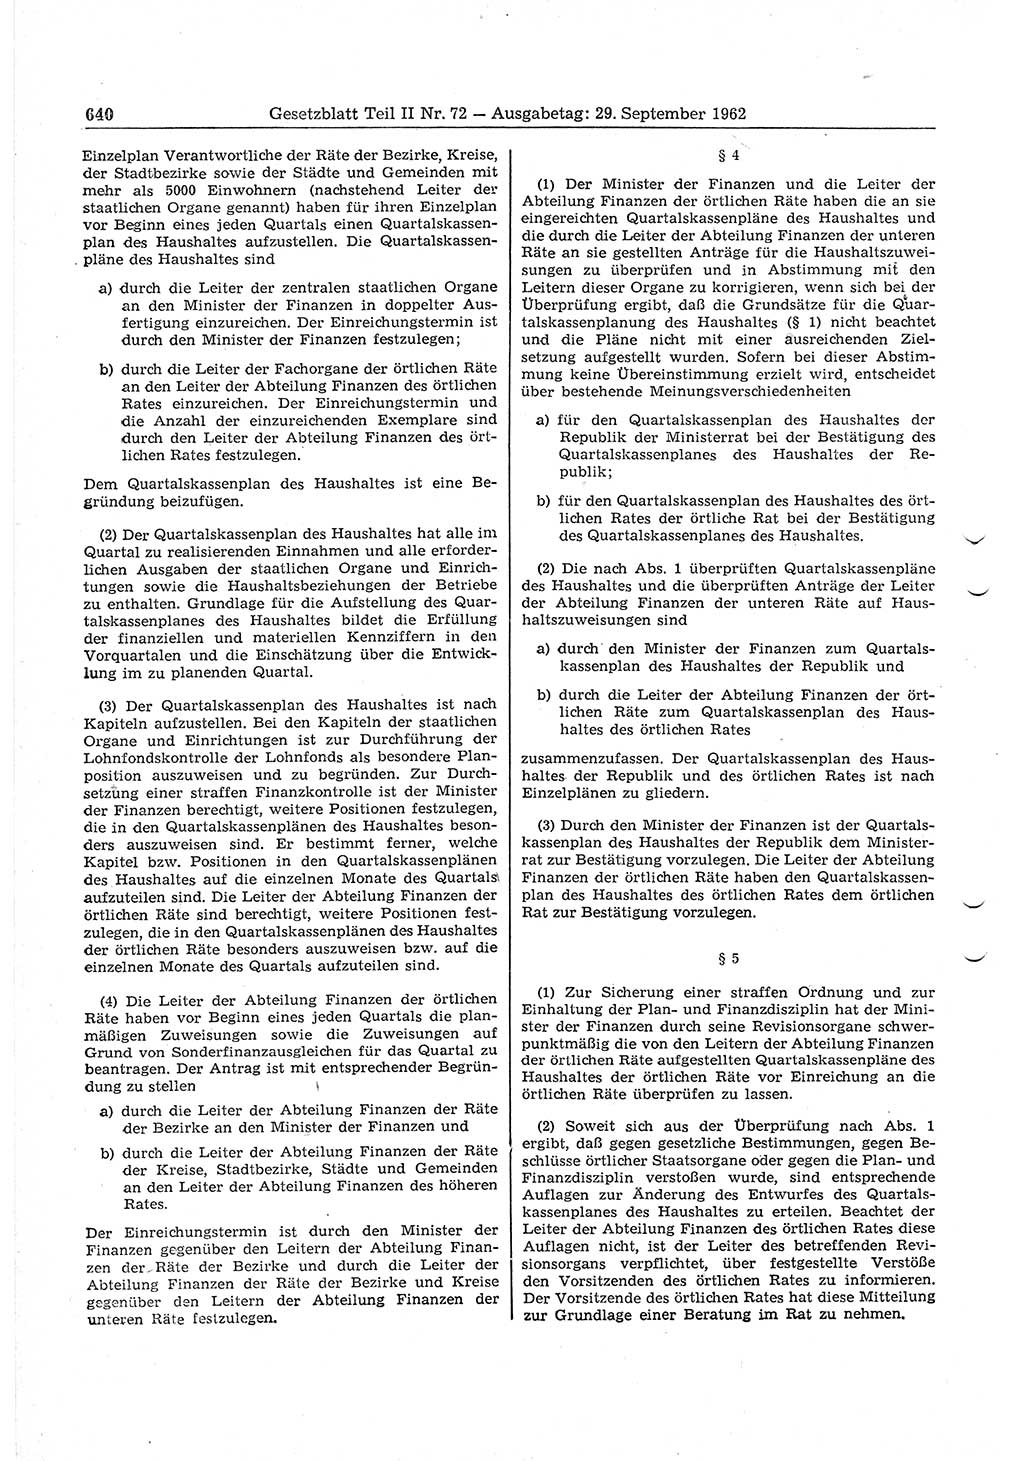 Gesetzblatt (GBl.) der Deutschen Demokratischen Republik (DDR) Teil ⅠⅠ 1962, Seite 640 (GBl. DDR ⅠⅠ 1962, S. 640)